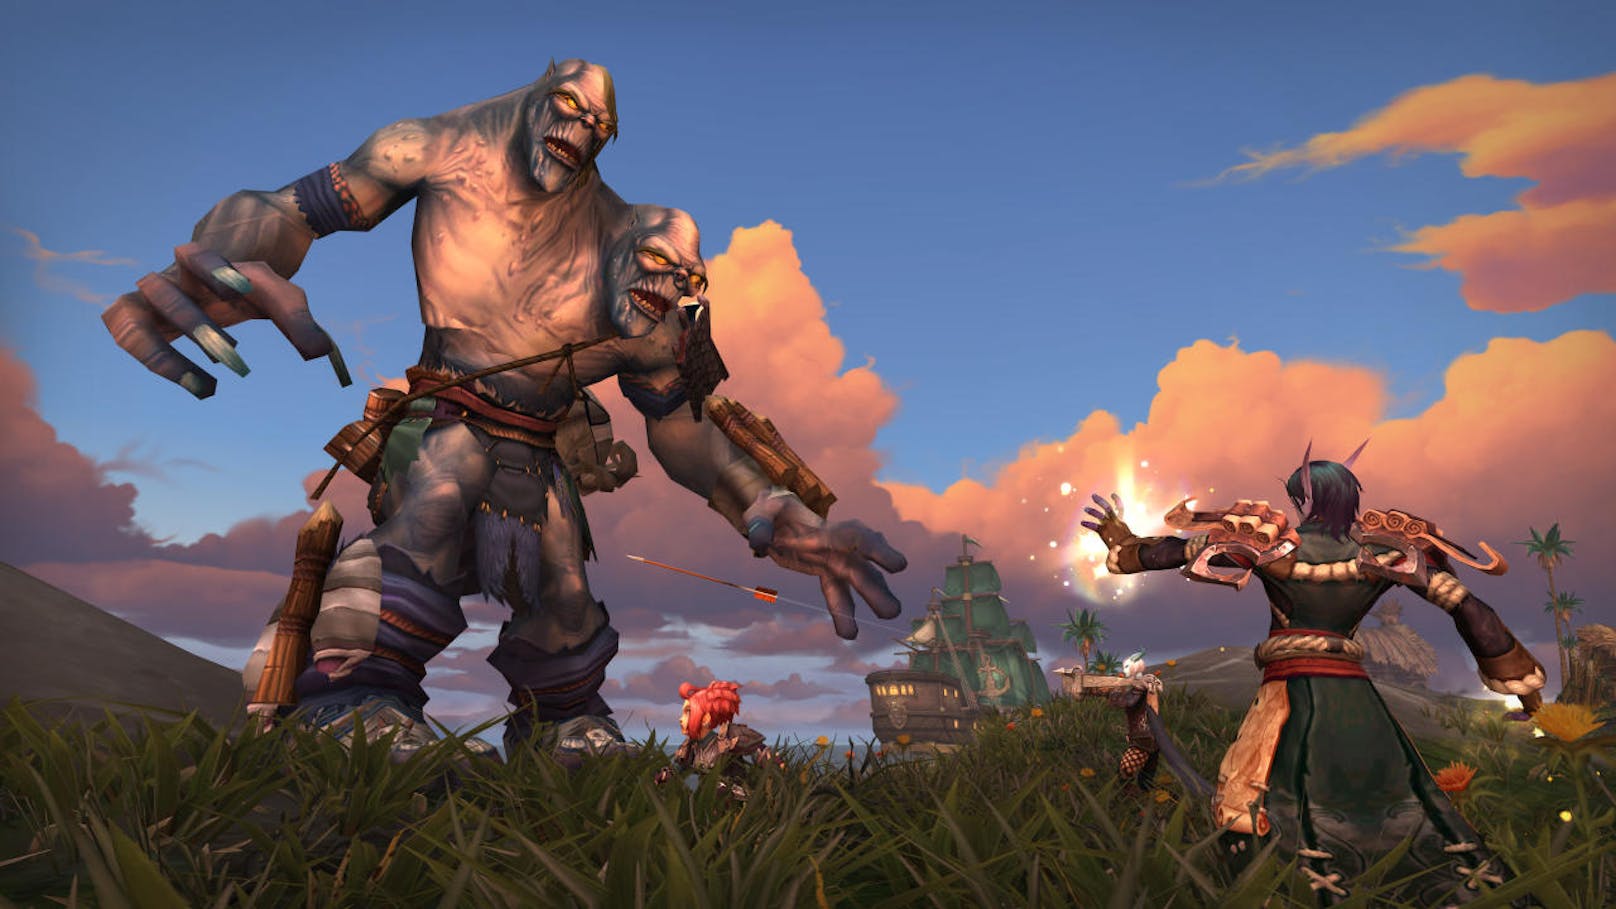 Punktlandung: Battle for Azeroth stellt während der Gamescom einen neuen Rekord für die bislang am schnellsten verkaufte "World of Warcraft"-Erweiterung auf. Helden der Allianz und Horde aus aller Welt folgten in Scharen dem Ruf zu den Waffen: Blizzard Entertainments neueste Erweiterung ging weltweit bereits über 3,4 Millionen Mal über die Ladentheke.